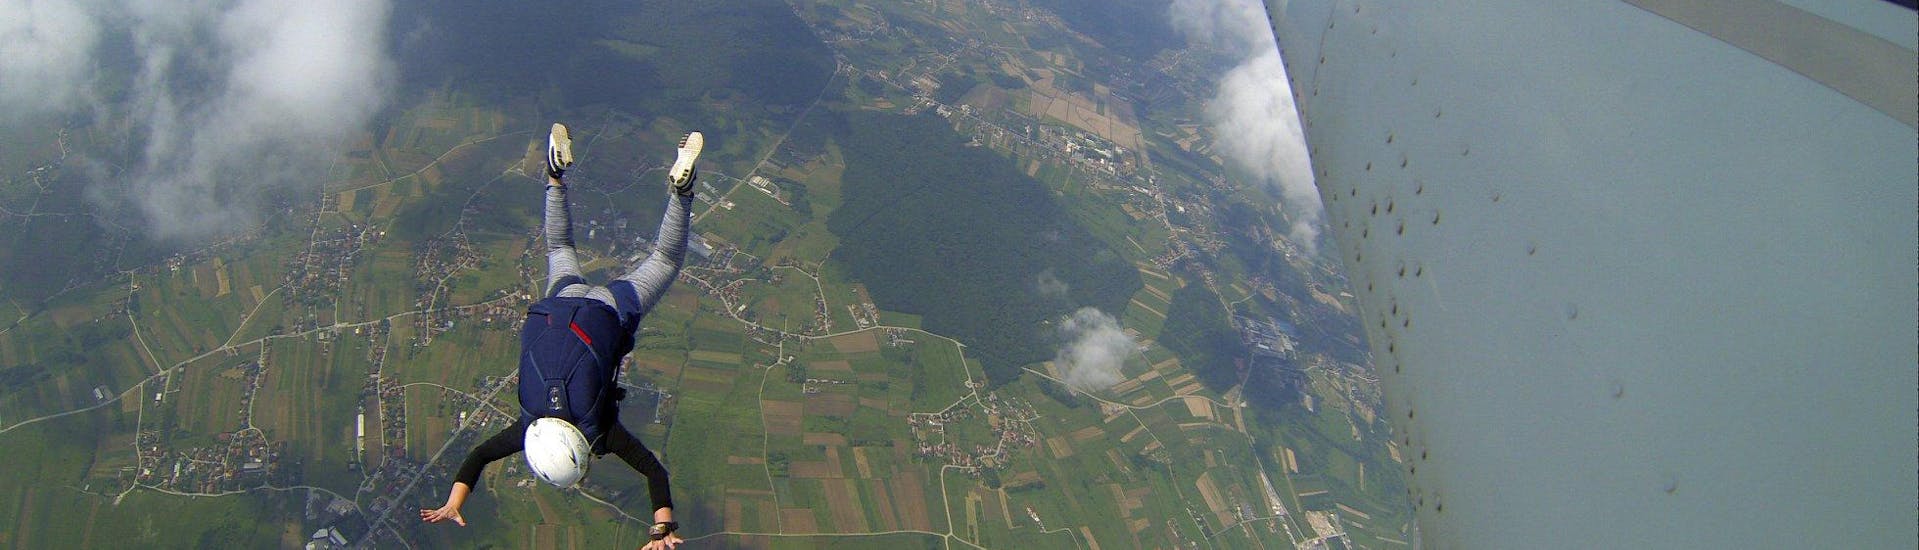 Paracadutismo in tandem a Ježdovec - Aerodrome Zagreb-Lučko.